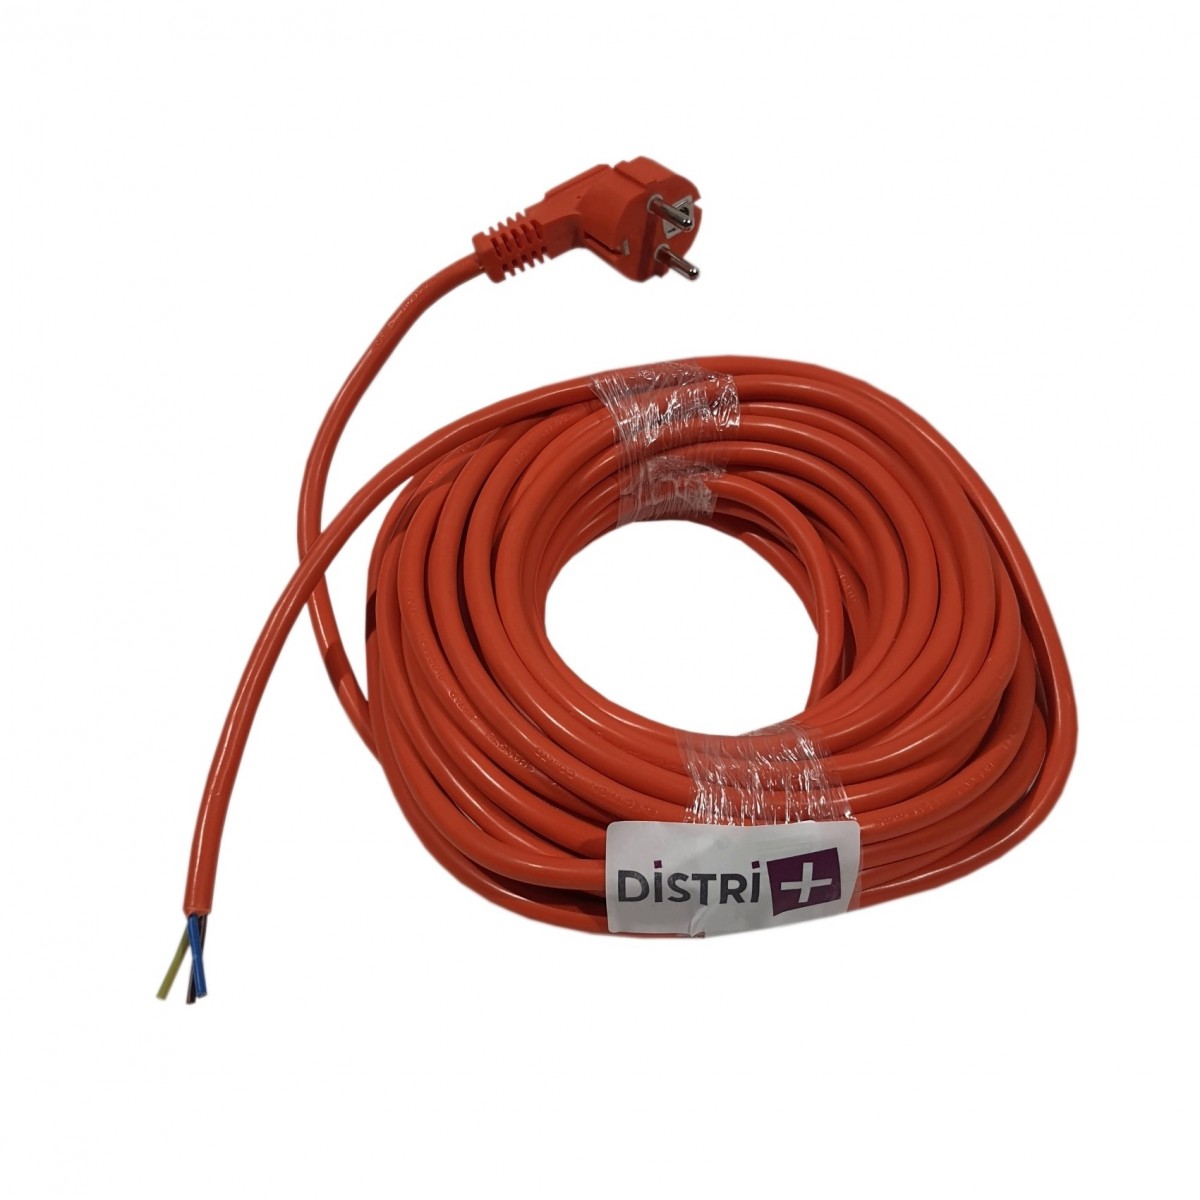 Protecteur de câbles éco en élastomère - Pour 2 câbles